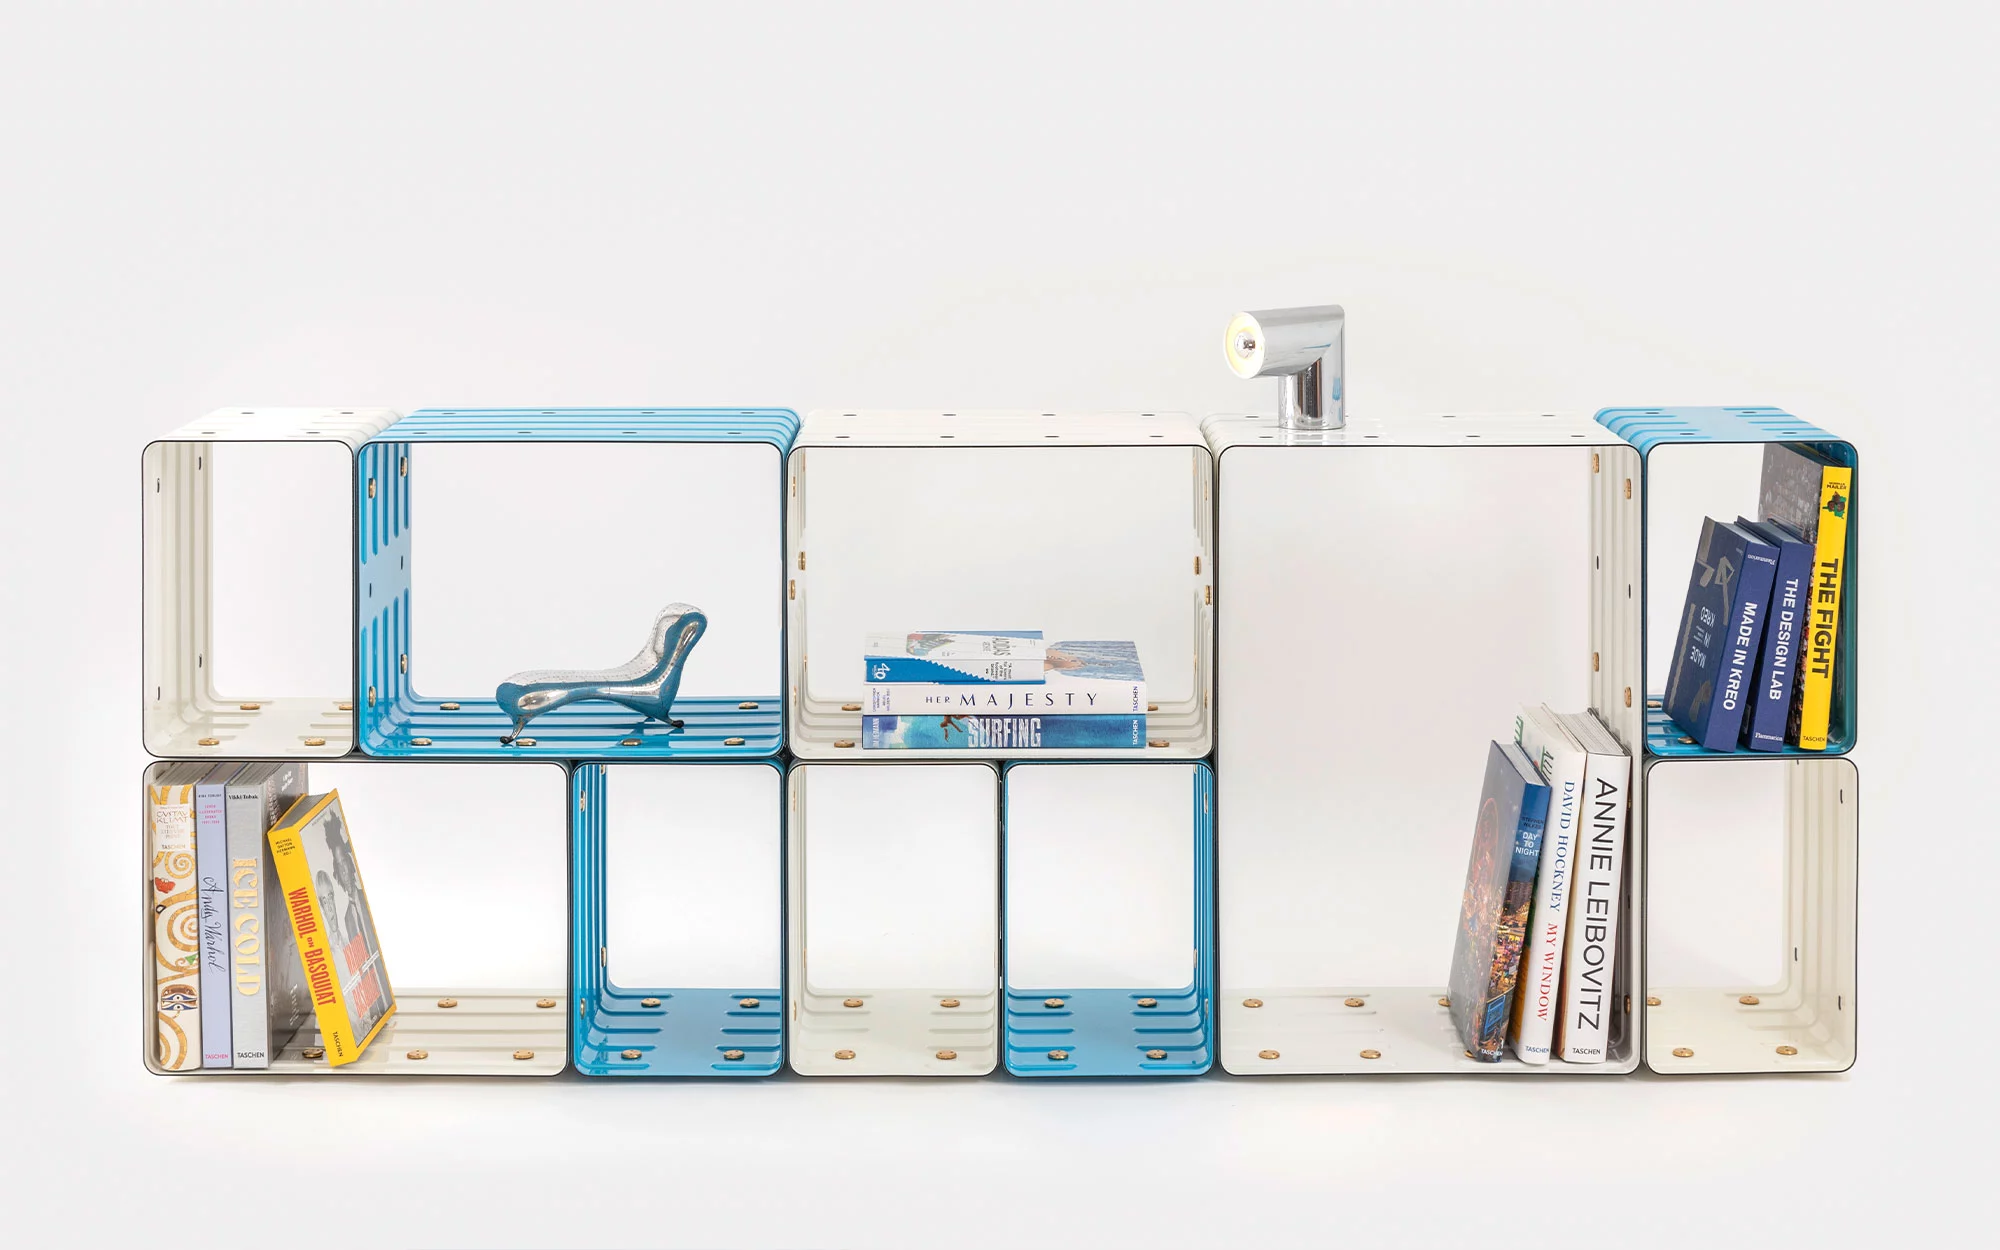 marc newson designs quobus, an enameled steel bookshelf for galerie kreo